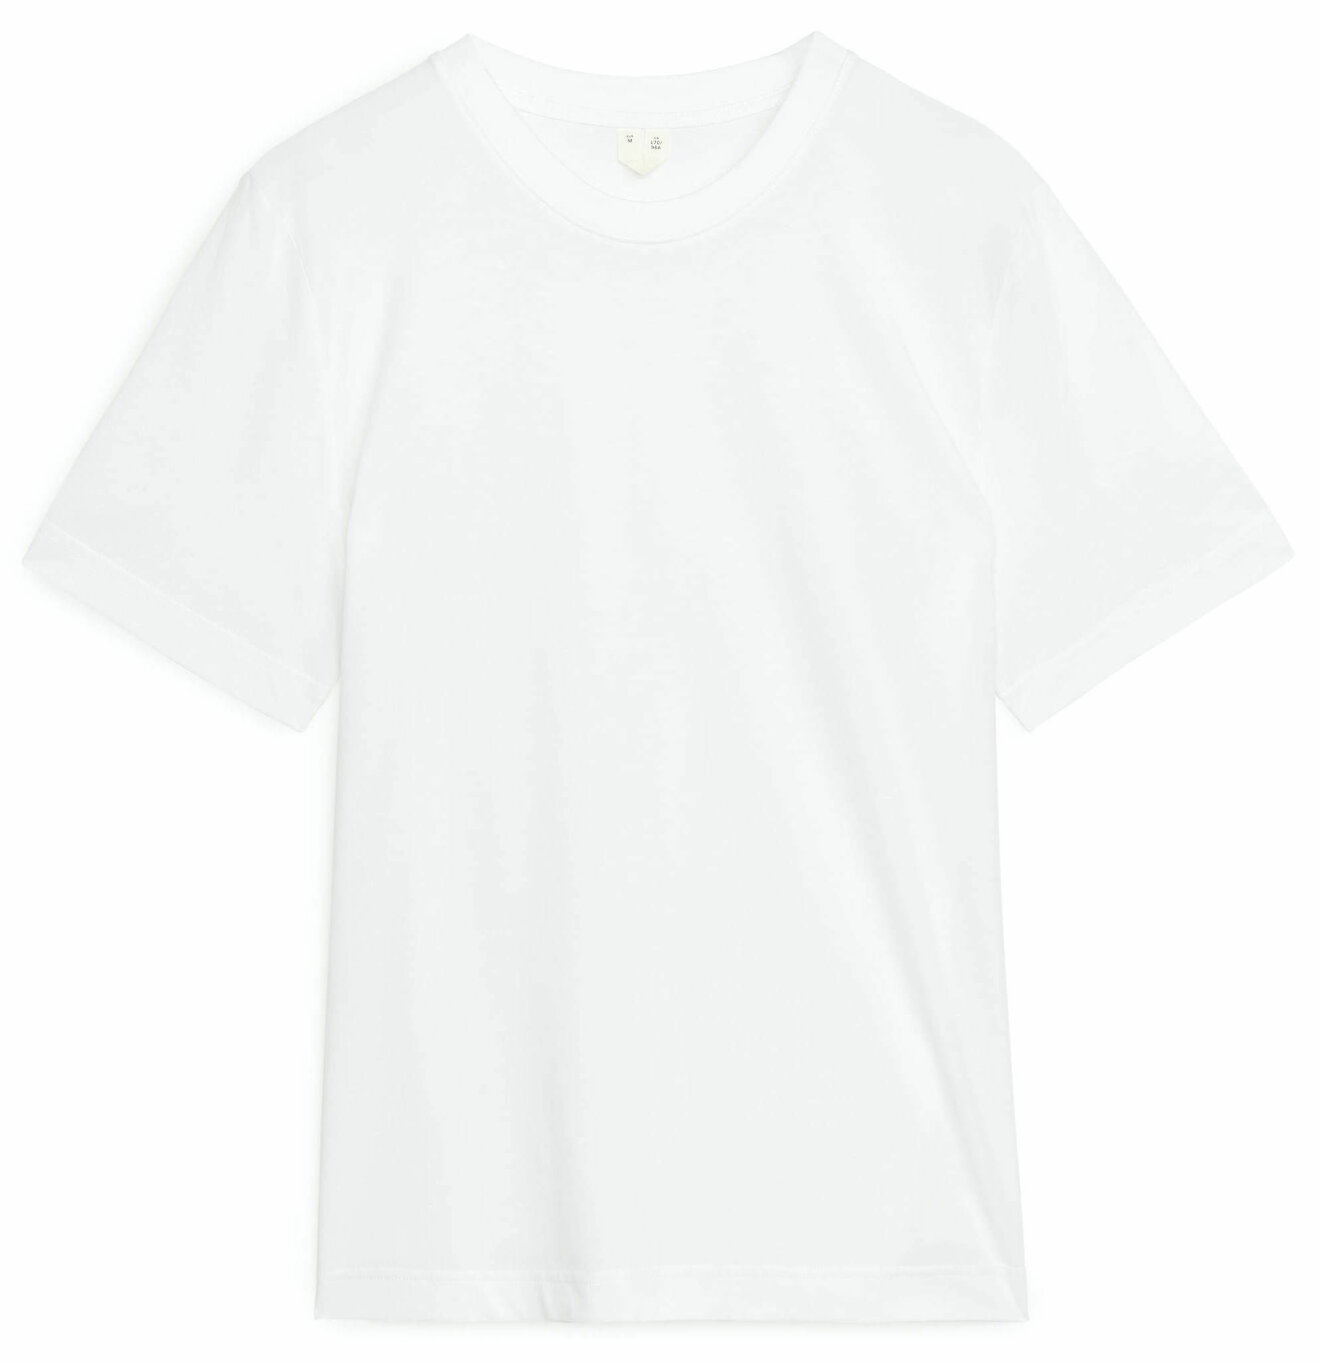 Den perfekta vita t-shirten kommer från Arket